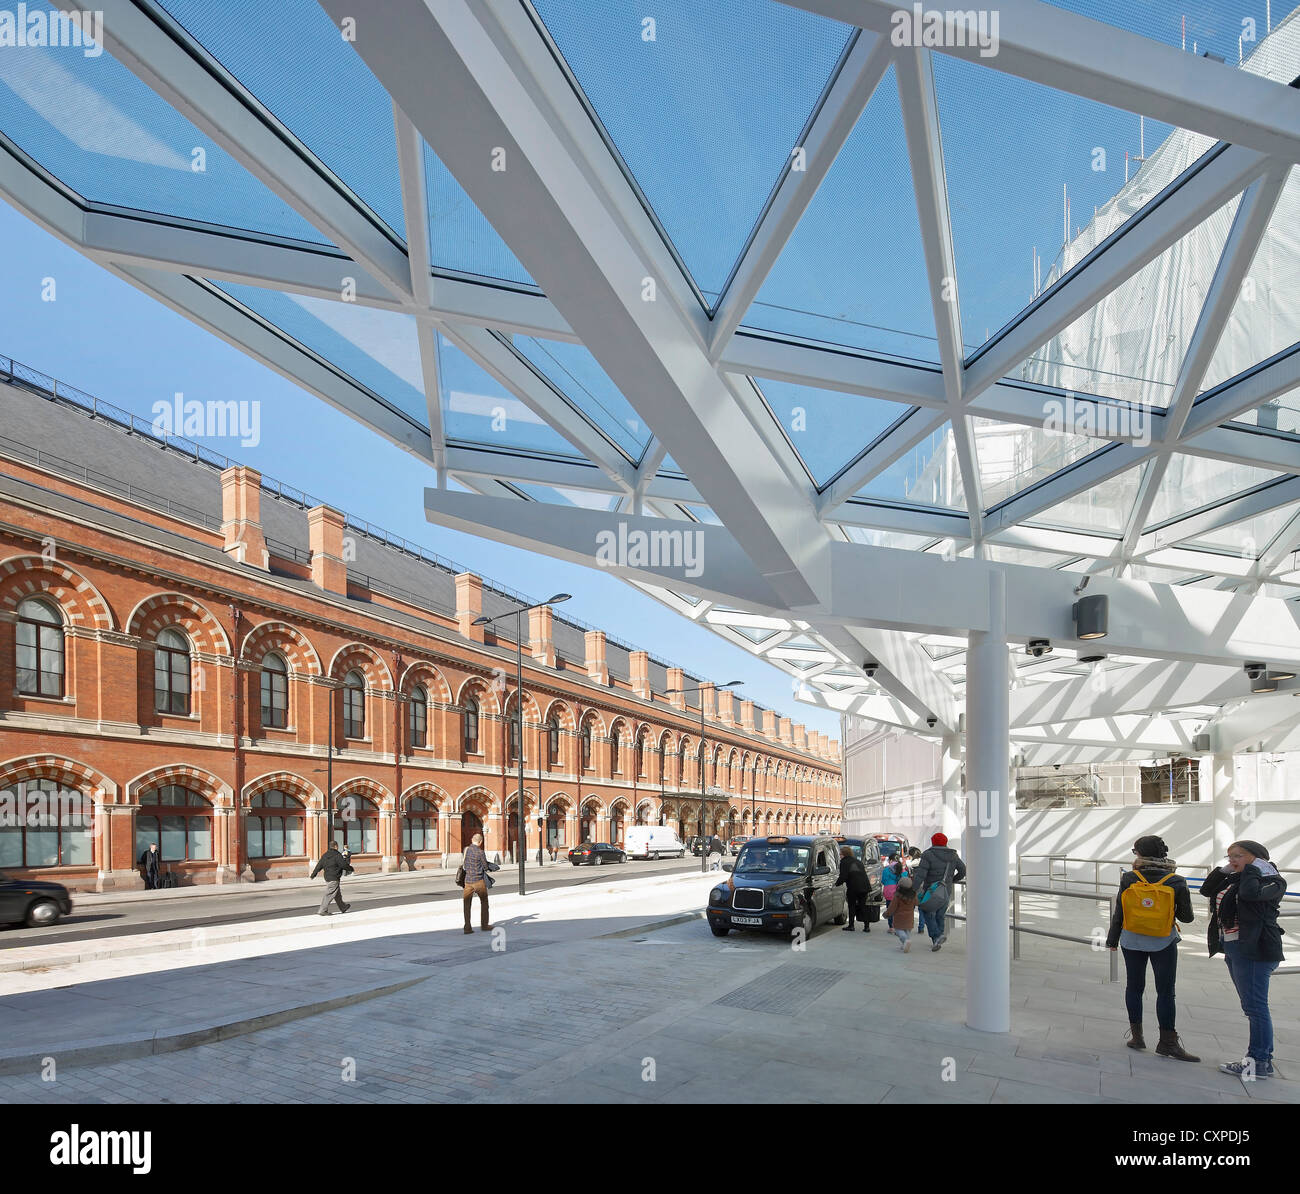 La gare de King's Cross, Londres, Royaume-Uni. Architecte : John McAslan & Partners, 2012. Banque D'Images